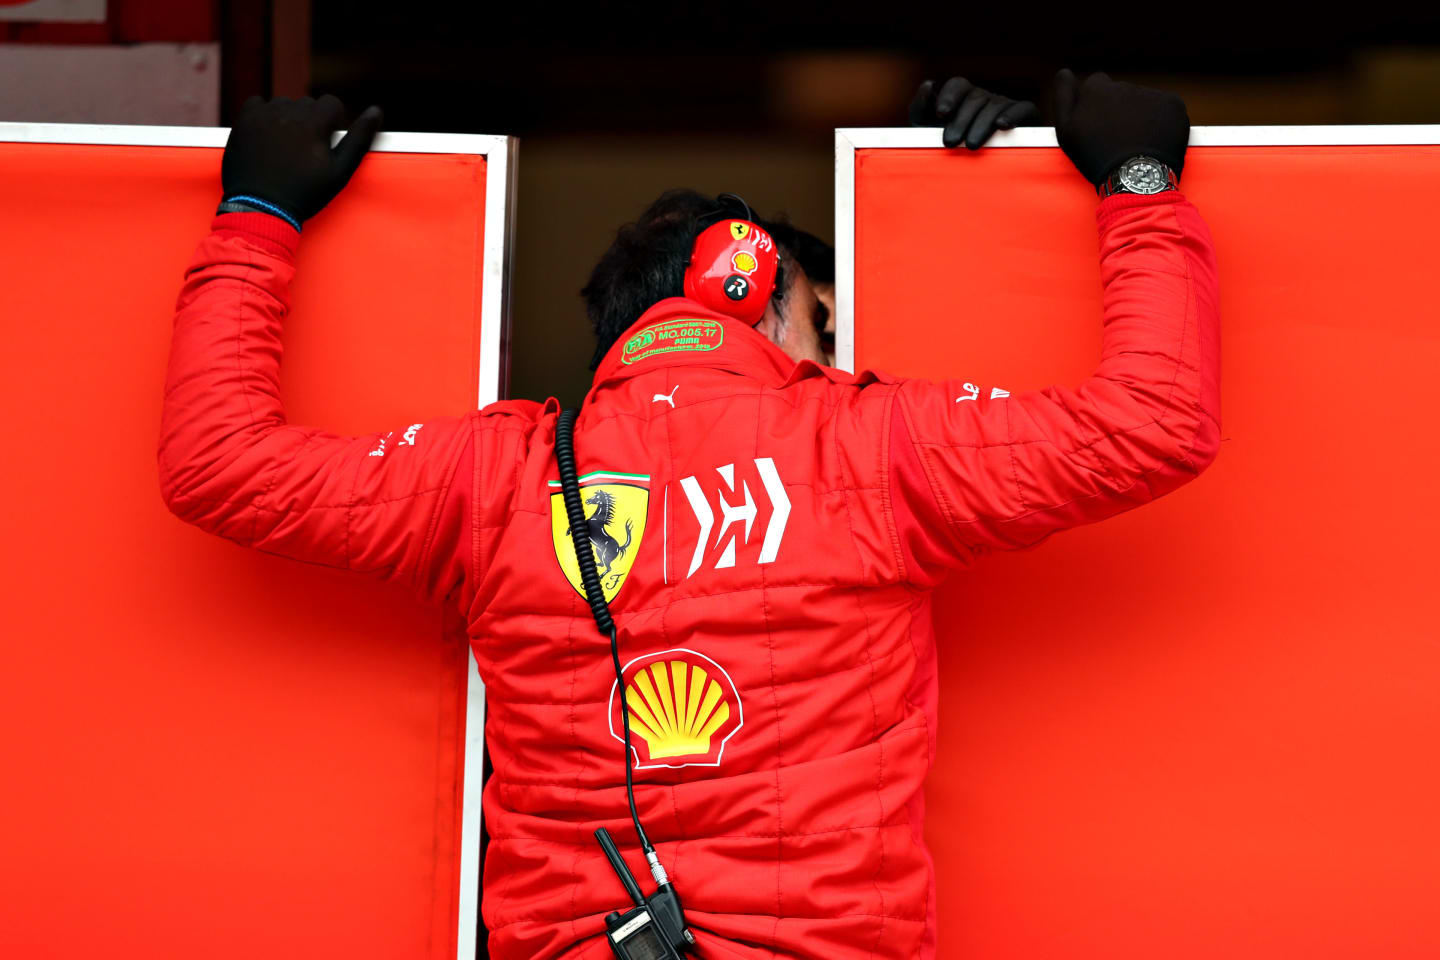 MONTMELO, SPAIN - FEBRUARY 20: A Ferrari team member looks through the screens into their garage